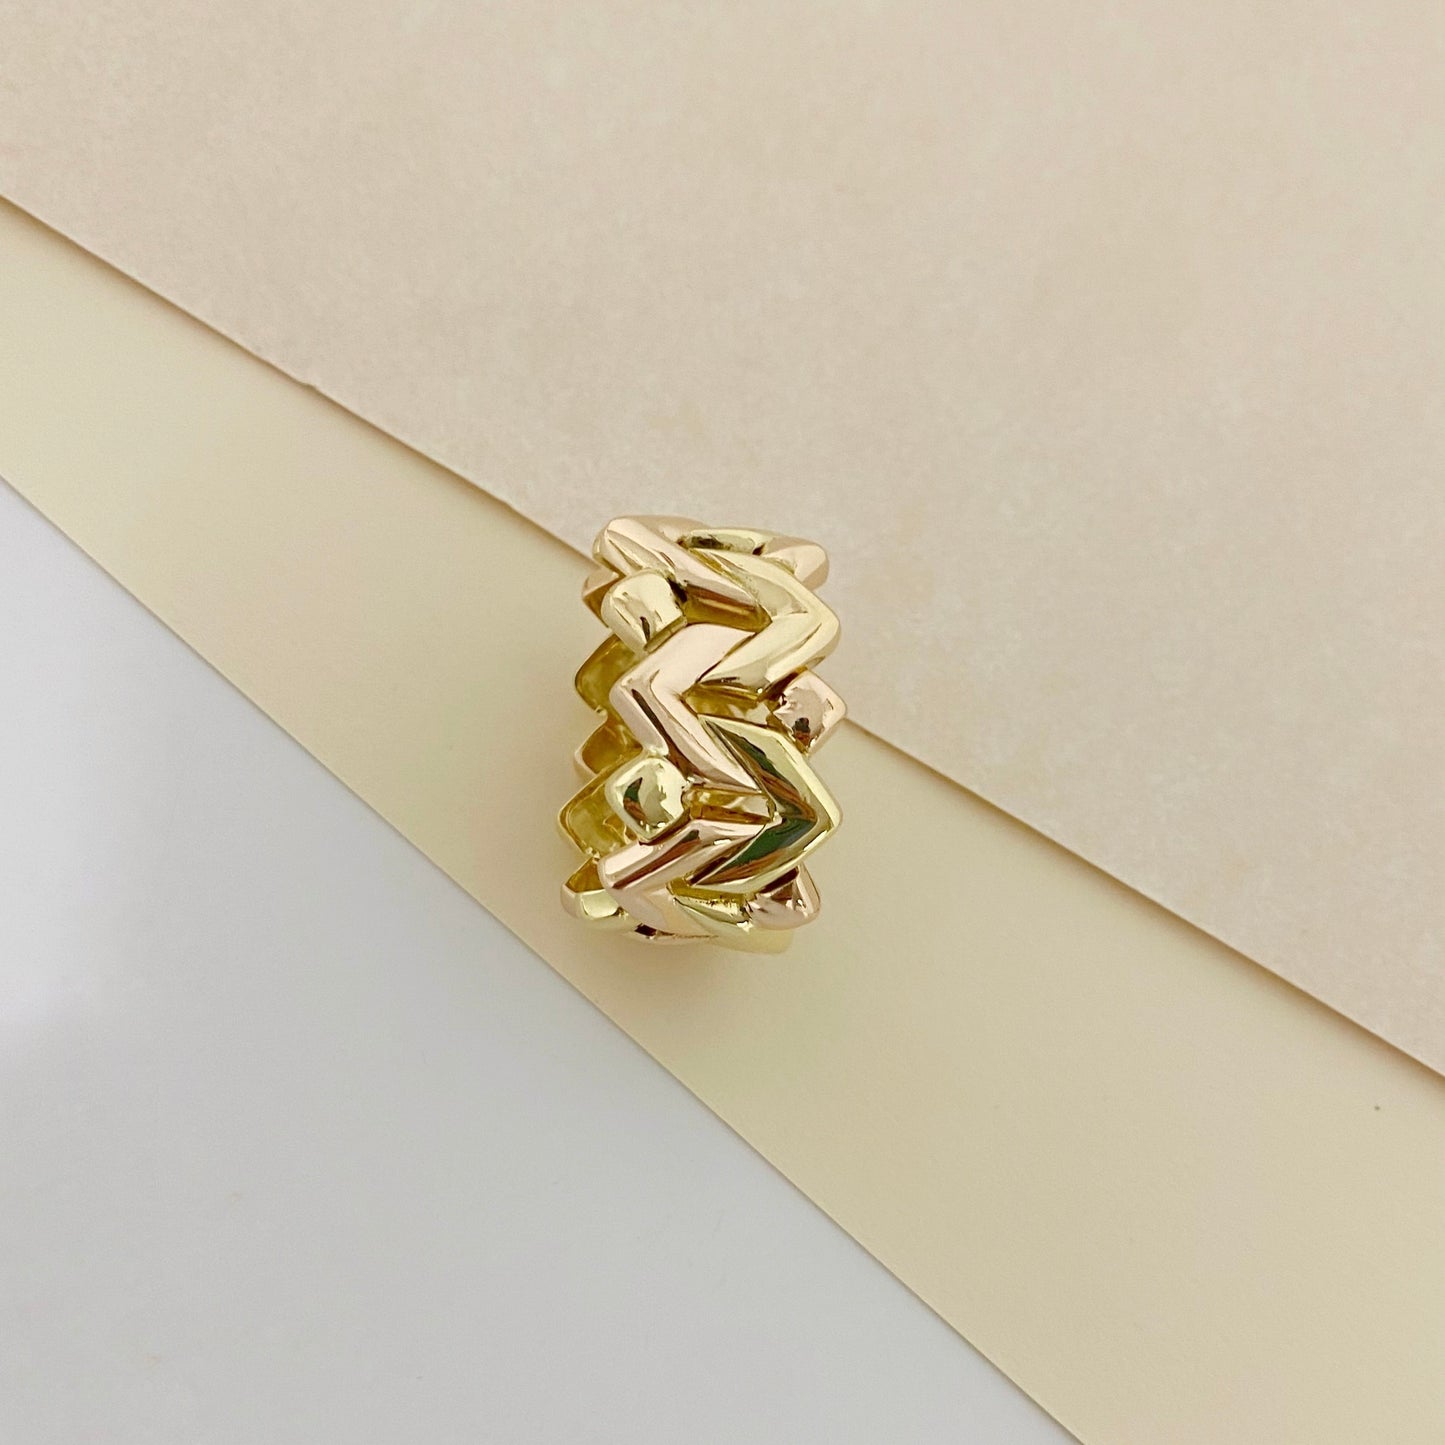 Original anillo de la firma Vasari bicolor, de oro blanco y oro rosa de 18kt. Su diseño flexible lo convierte en una joya muy cómoda y especial. Joyería compro oro, dónde comprar y vender joyas al mejor precio en Barcelona